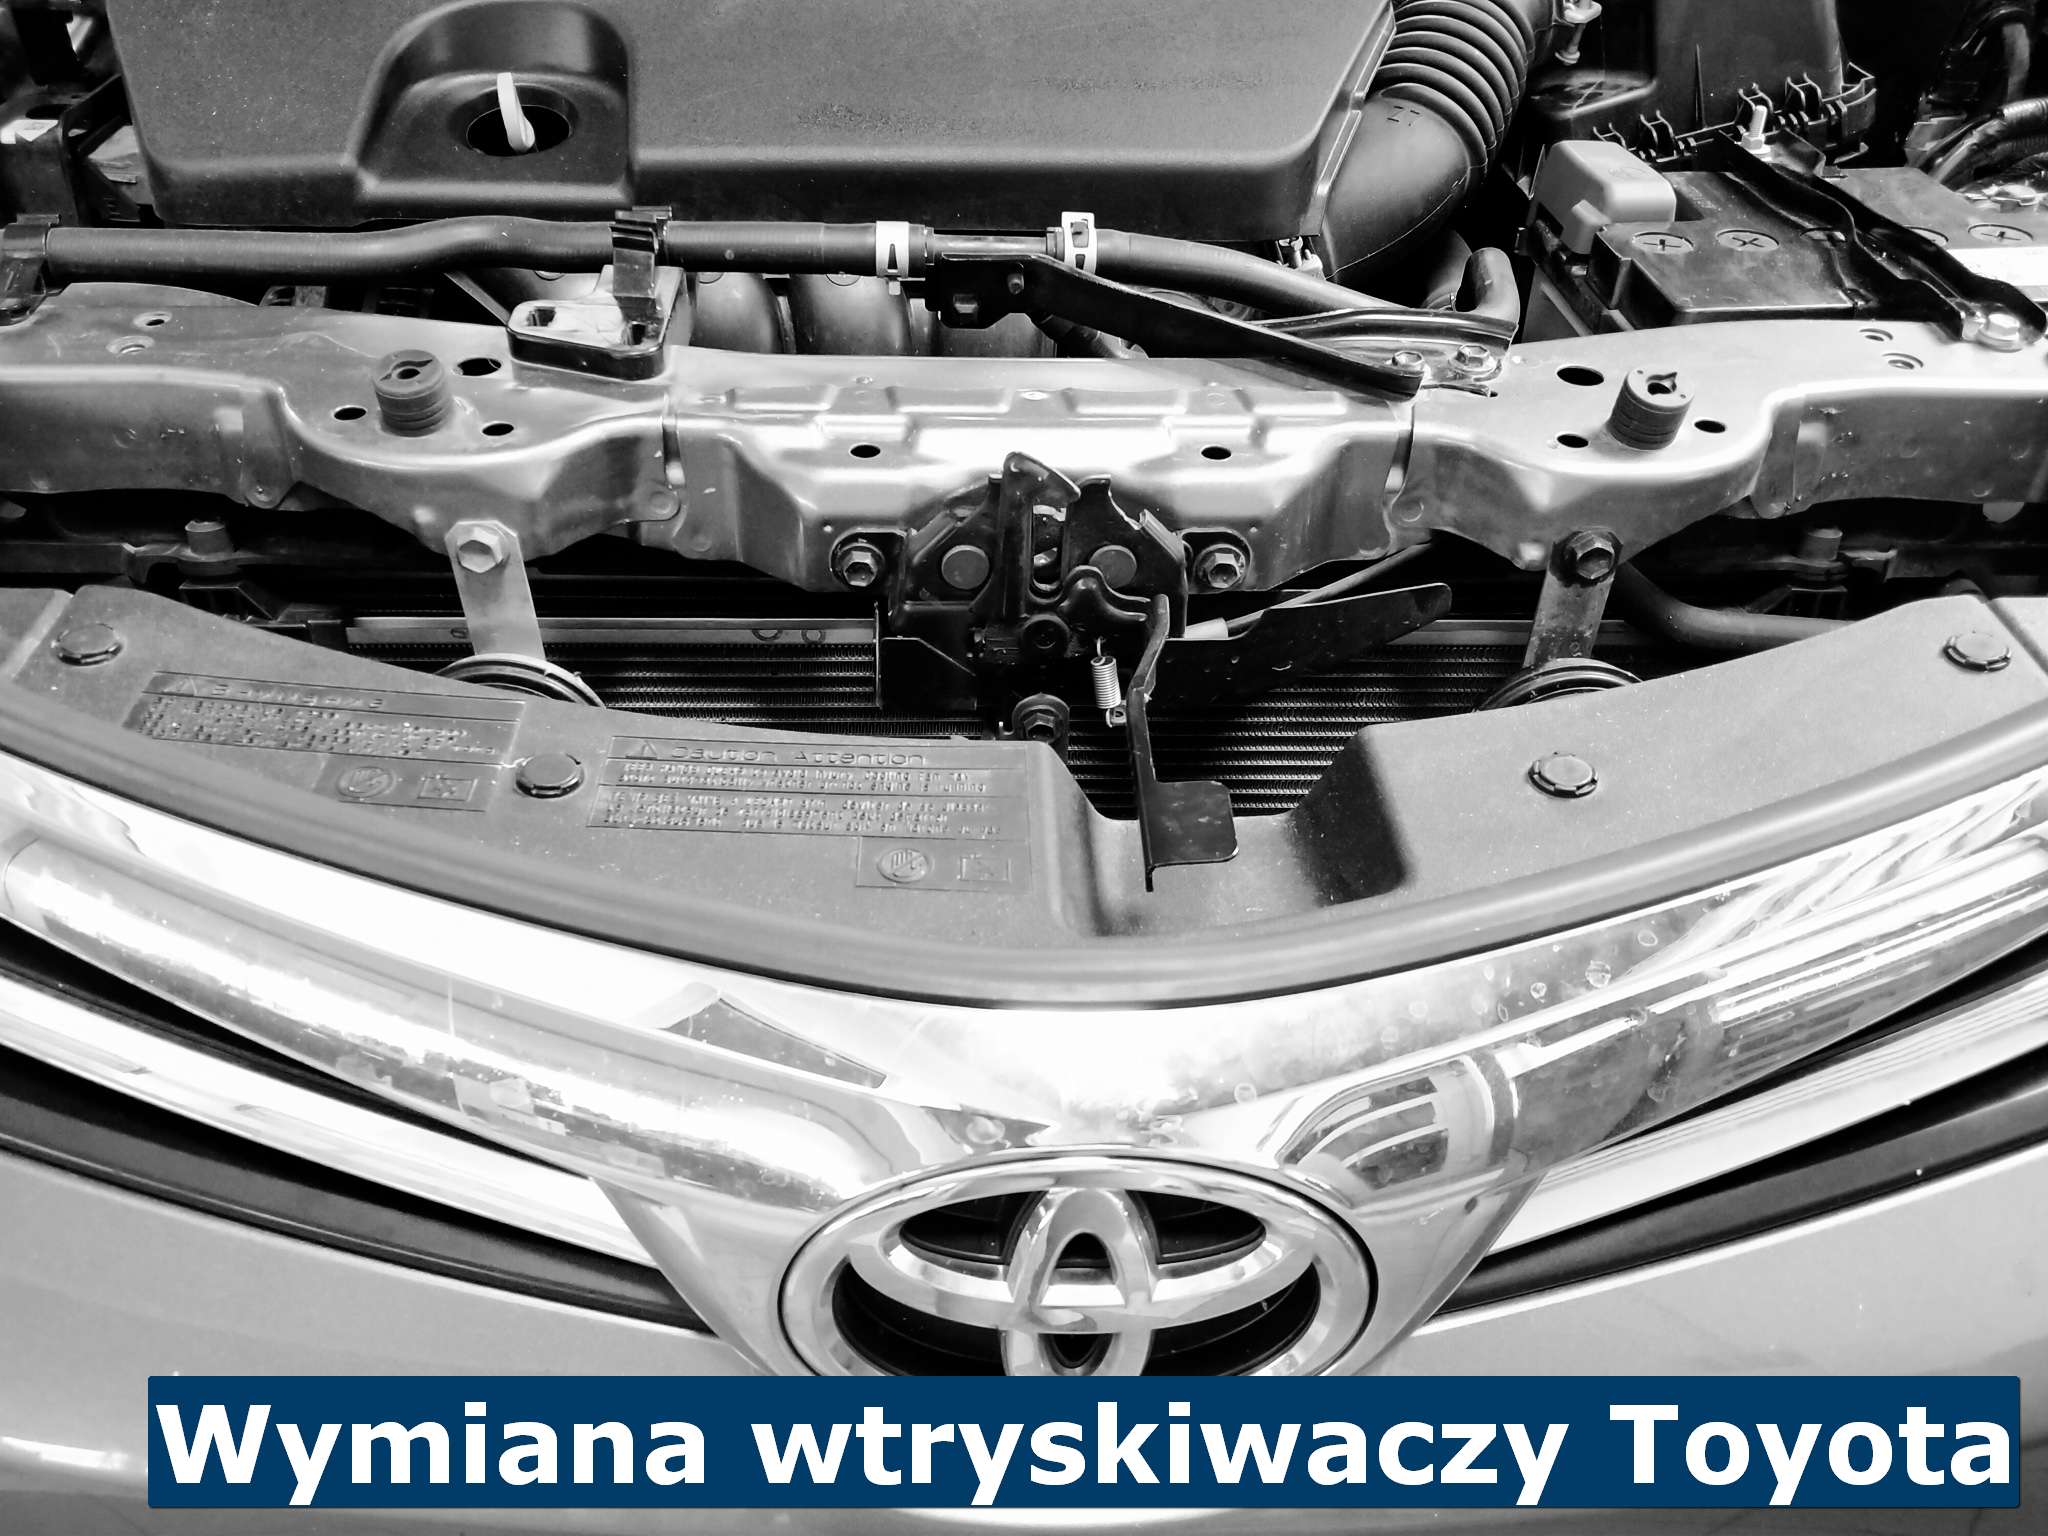 Wtryskiwacz Toyota – Część 12